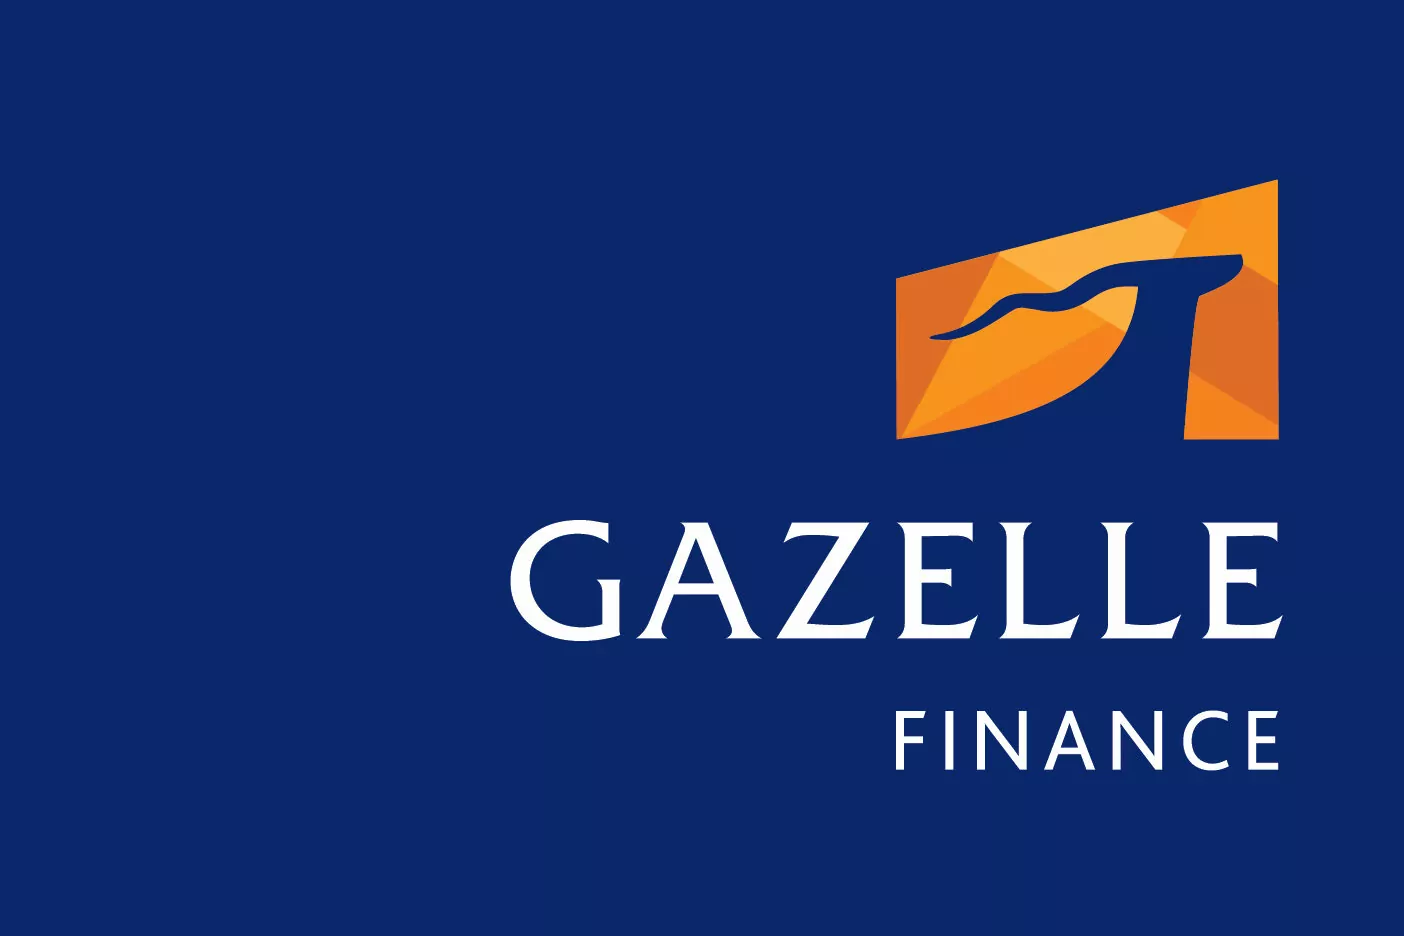 Gazelle Finance